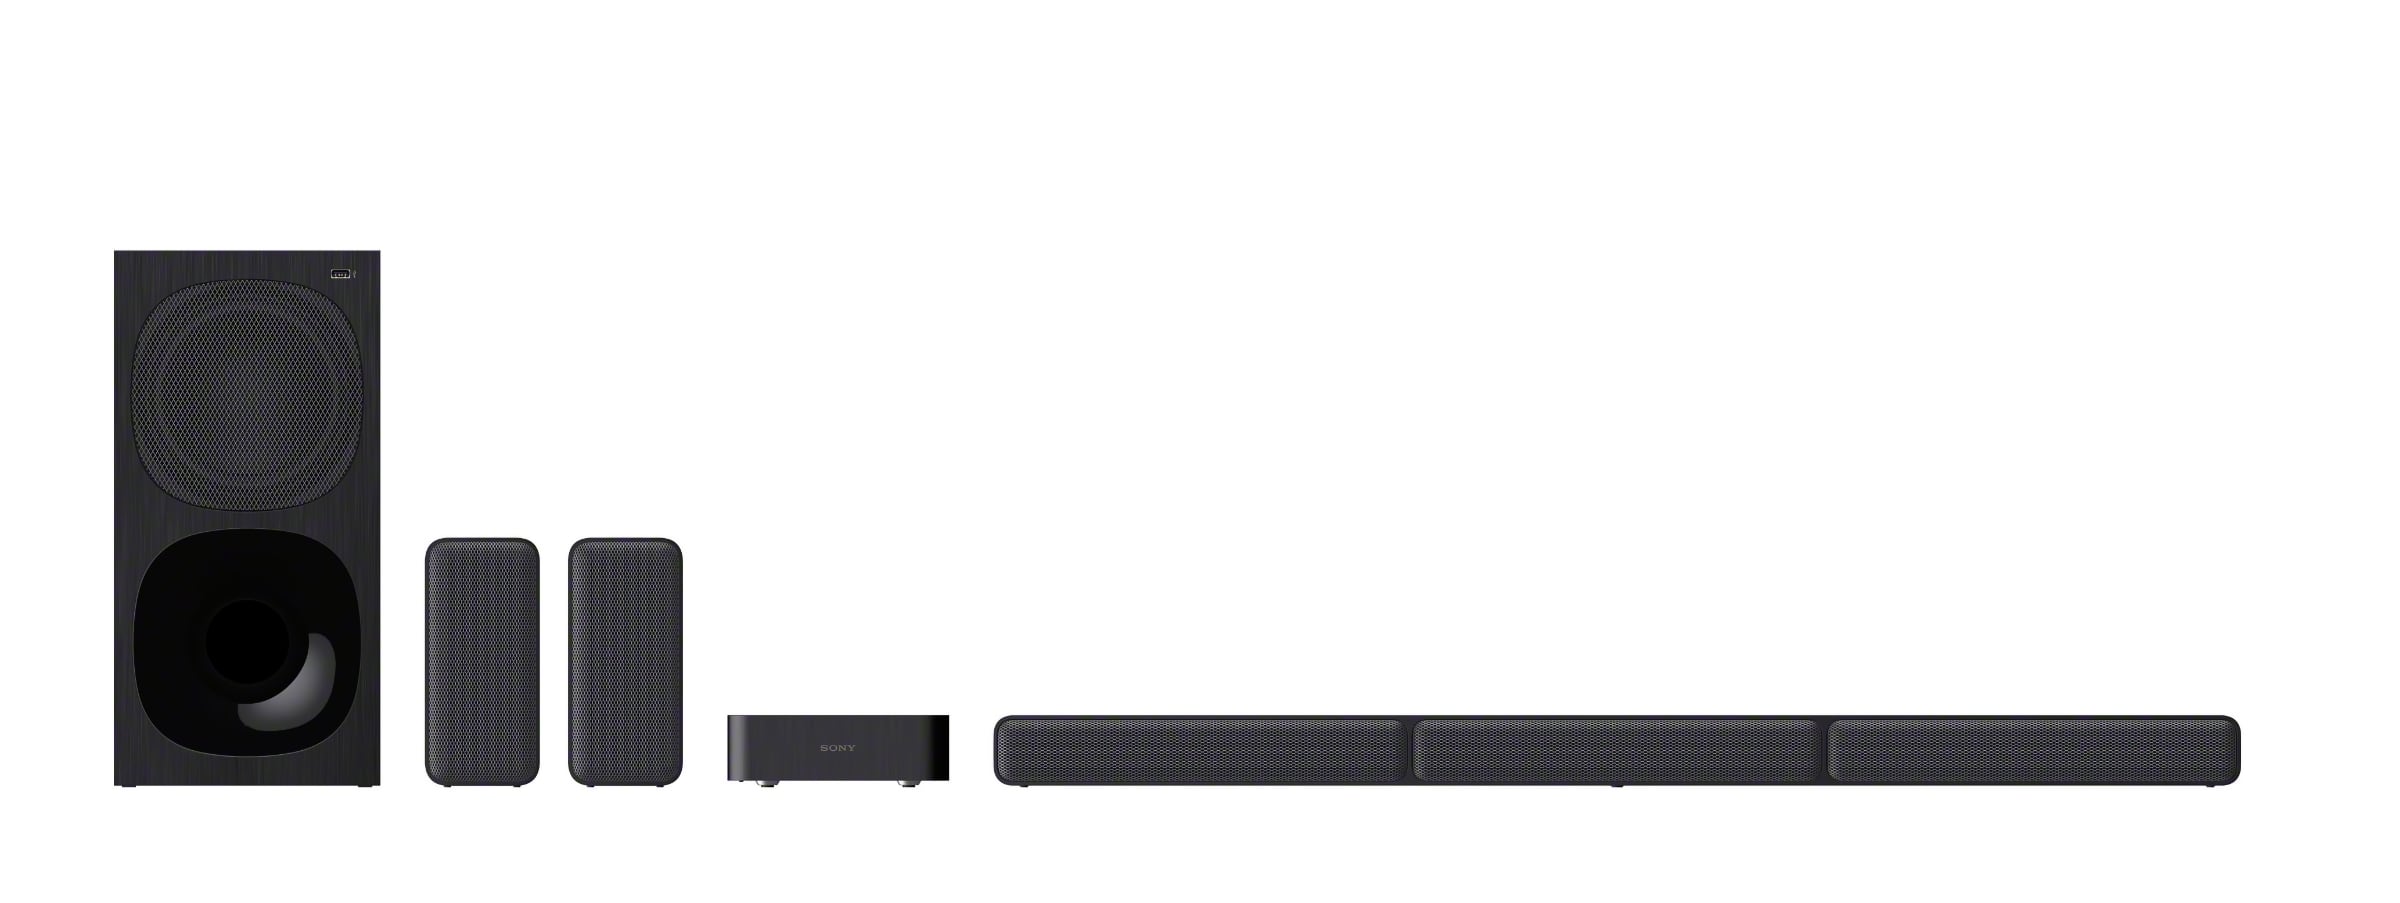 Socialist fort Specialisere Sony lancerer 5.1 soundbar med trådløs subwoofer & baghøjttalere, HT-S40R -  FlatpanelsDK